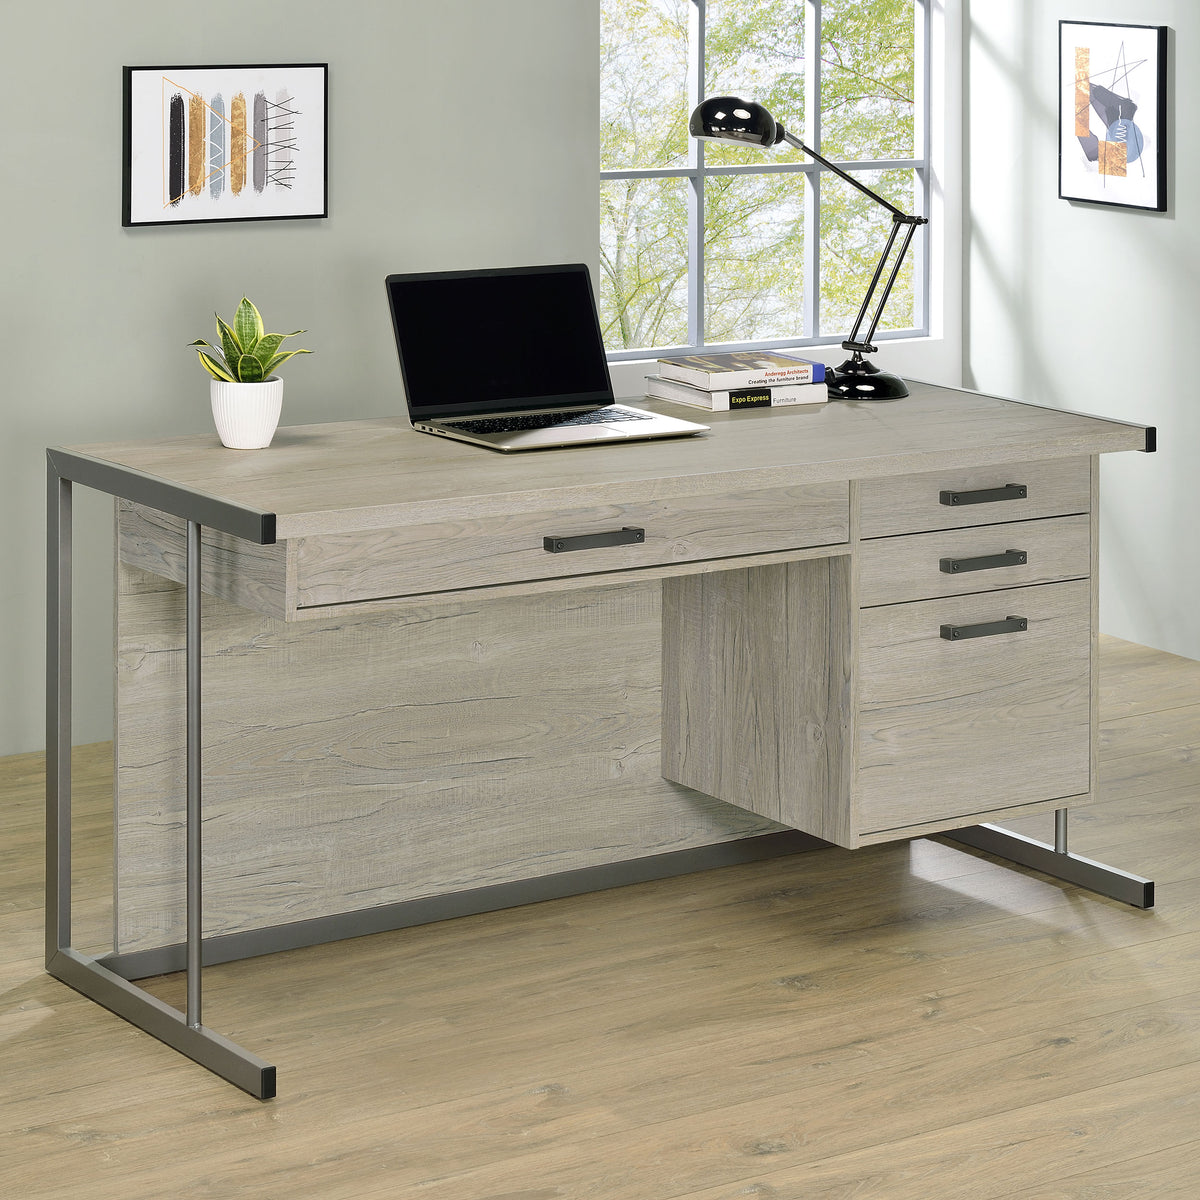 Loomis 4-drawer Rectangular Office Desk Whitewashed Grey and Gunmetal  Las Vegas Furniture Stores